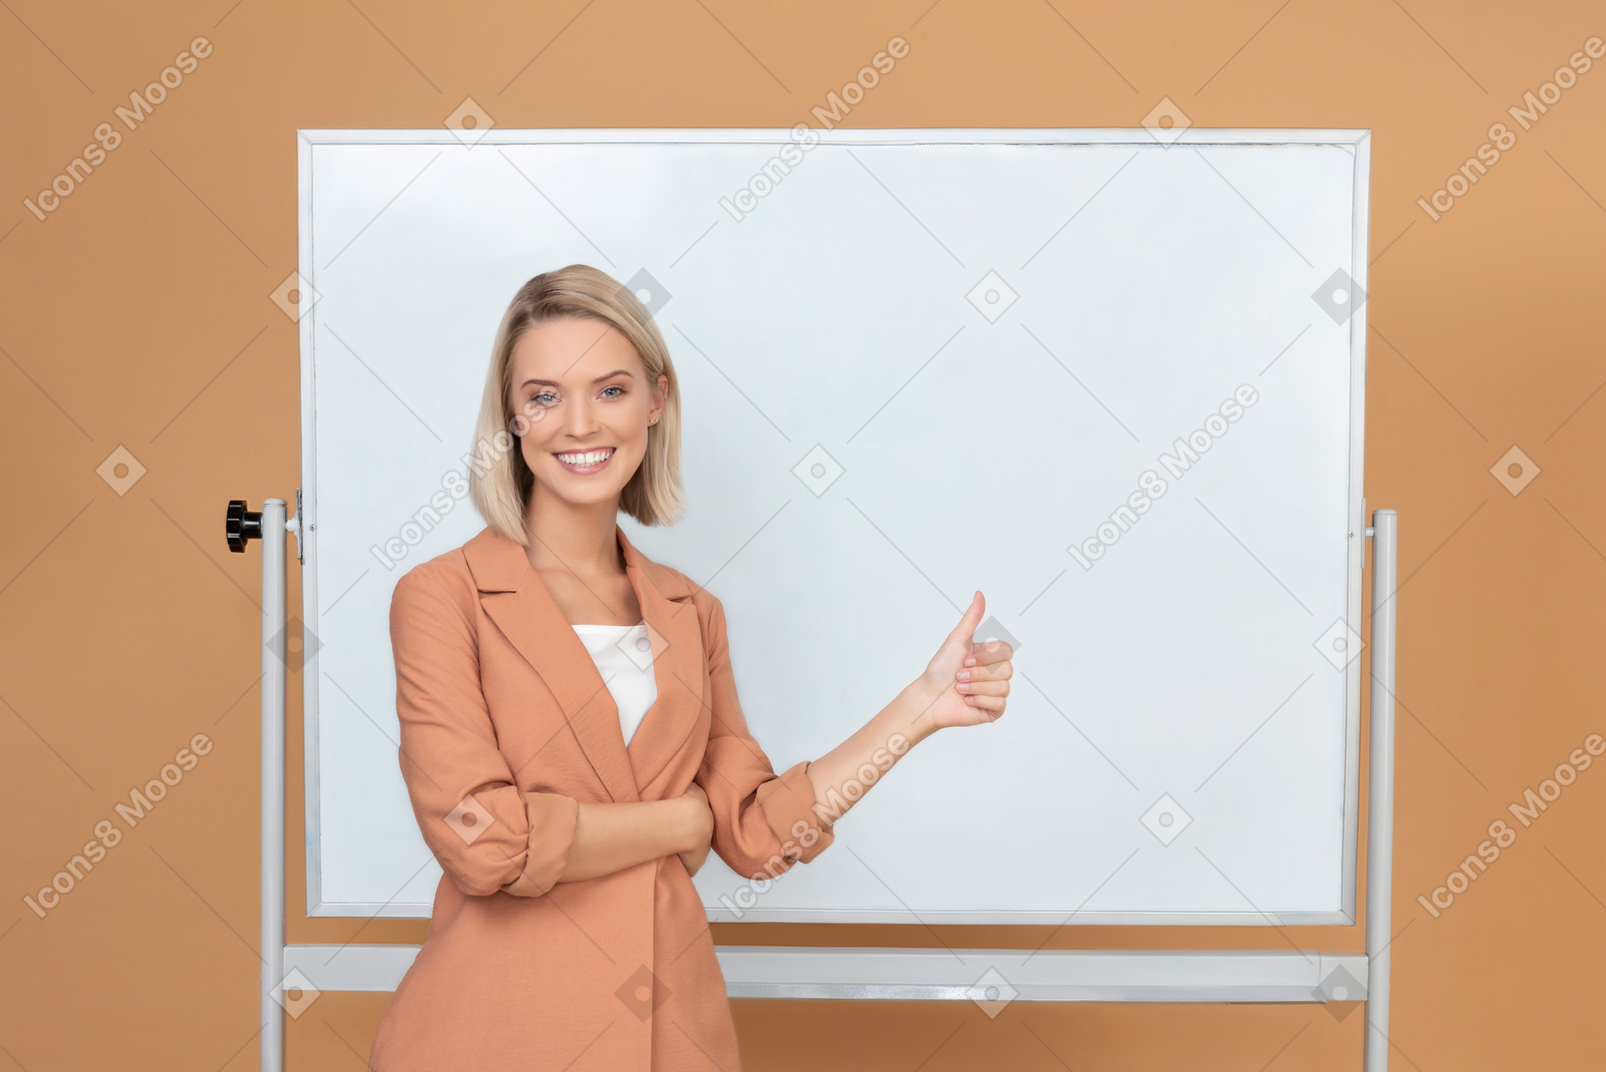 Lächelnde junge frau, die nahe bei einem whiteboard steht und sich einen daumen zeigt